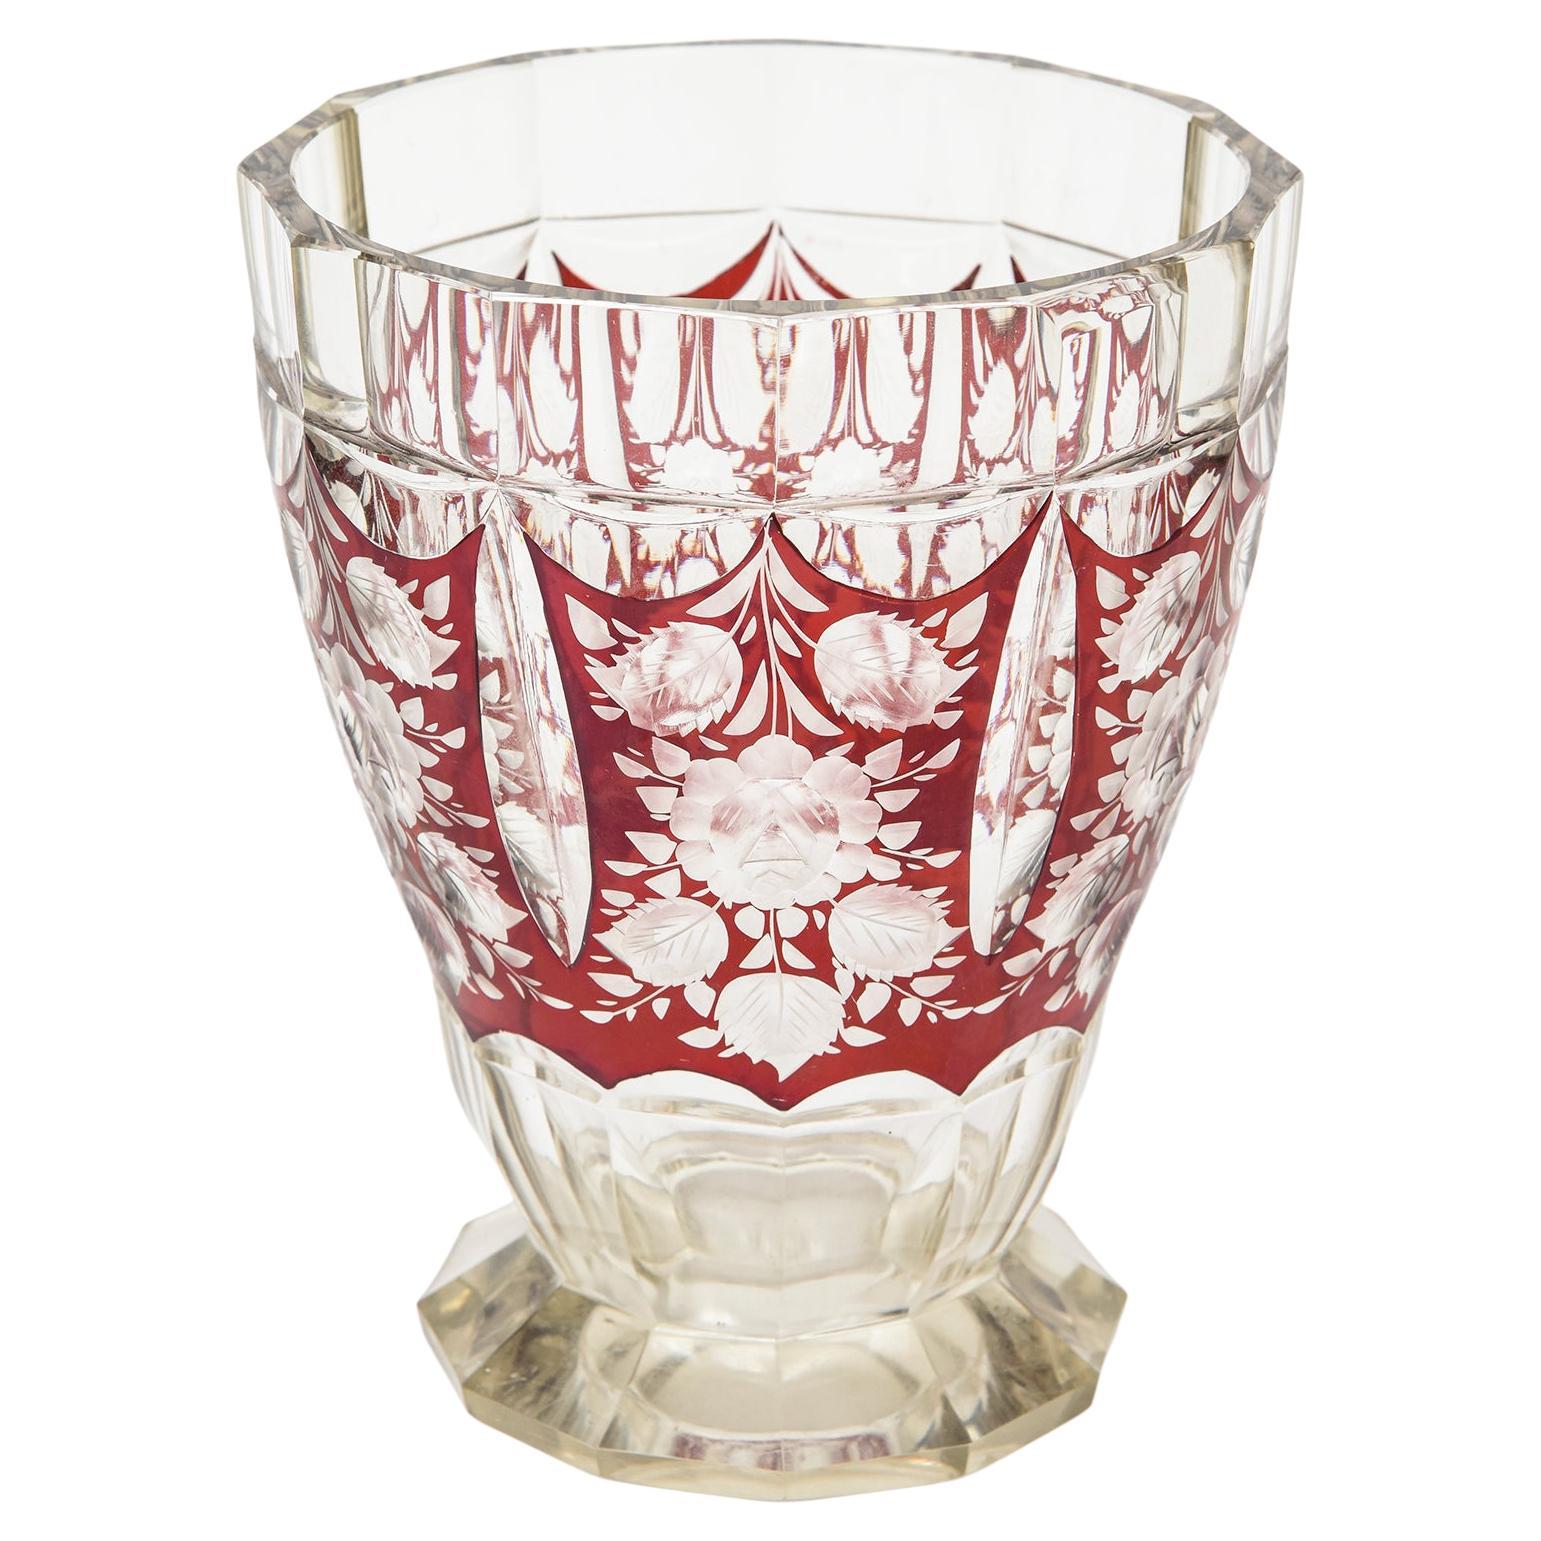 Böhmische Vase aus klarem, tschechischem Art déco-Kunstglas in Preiselbeerrot